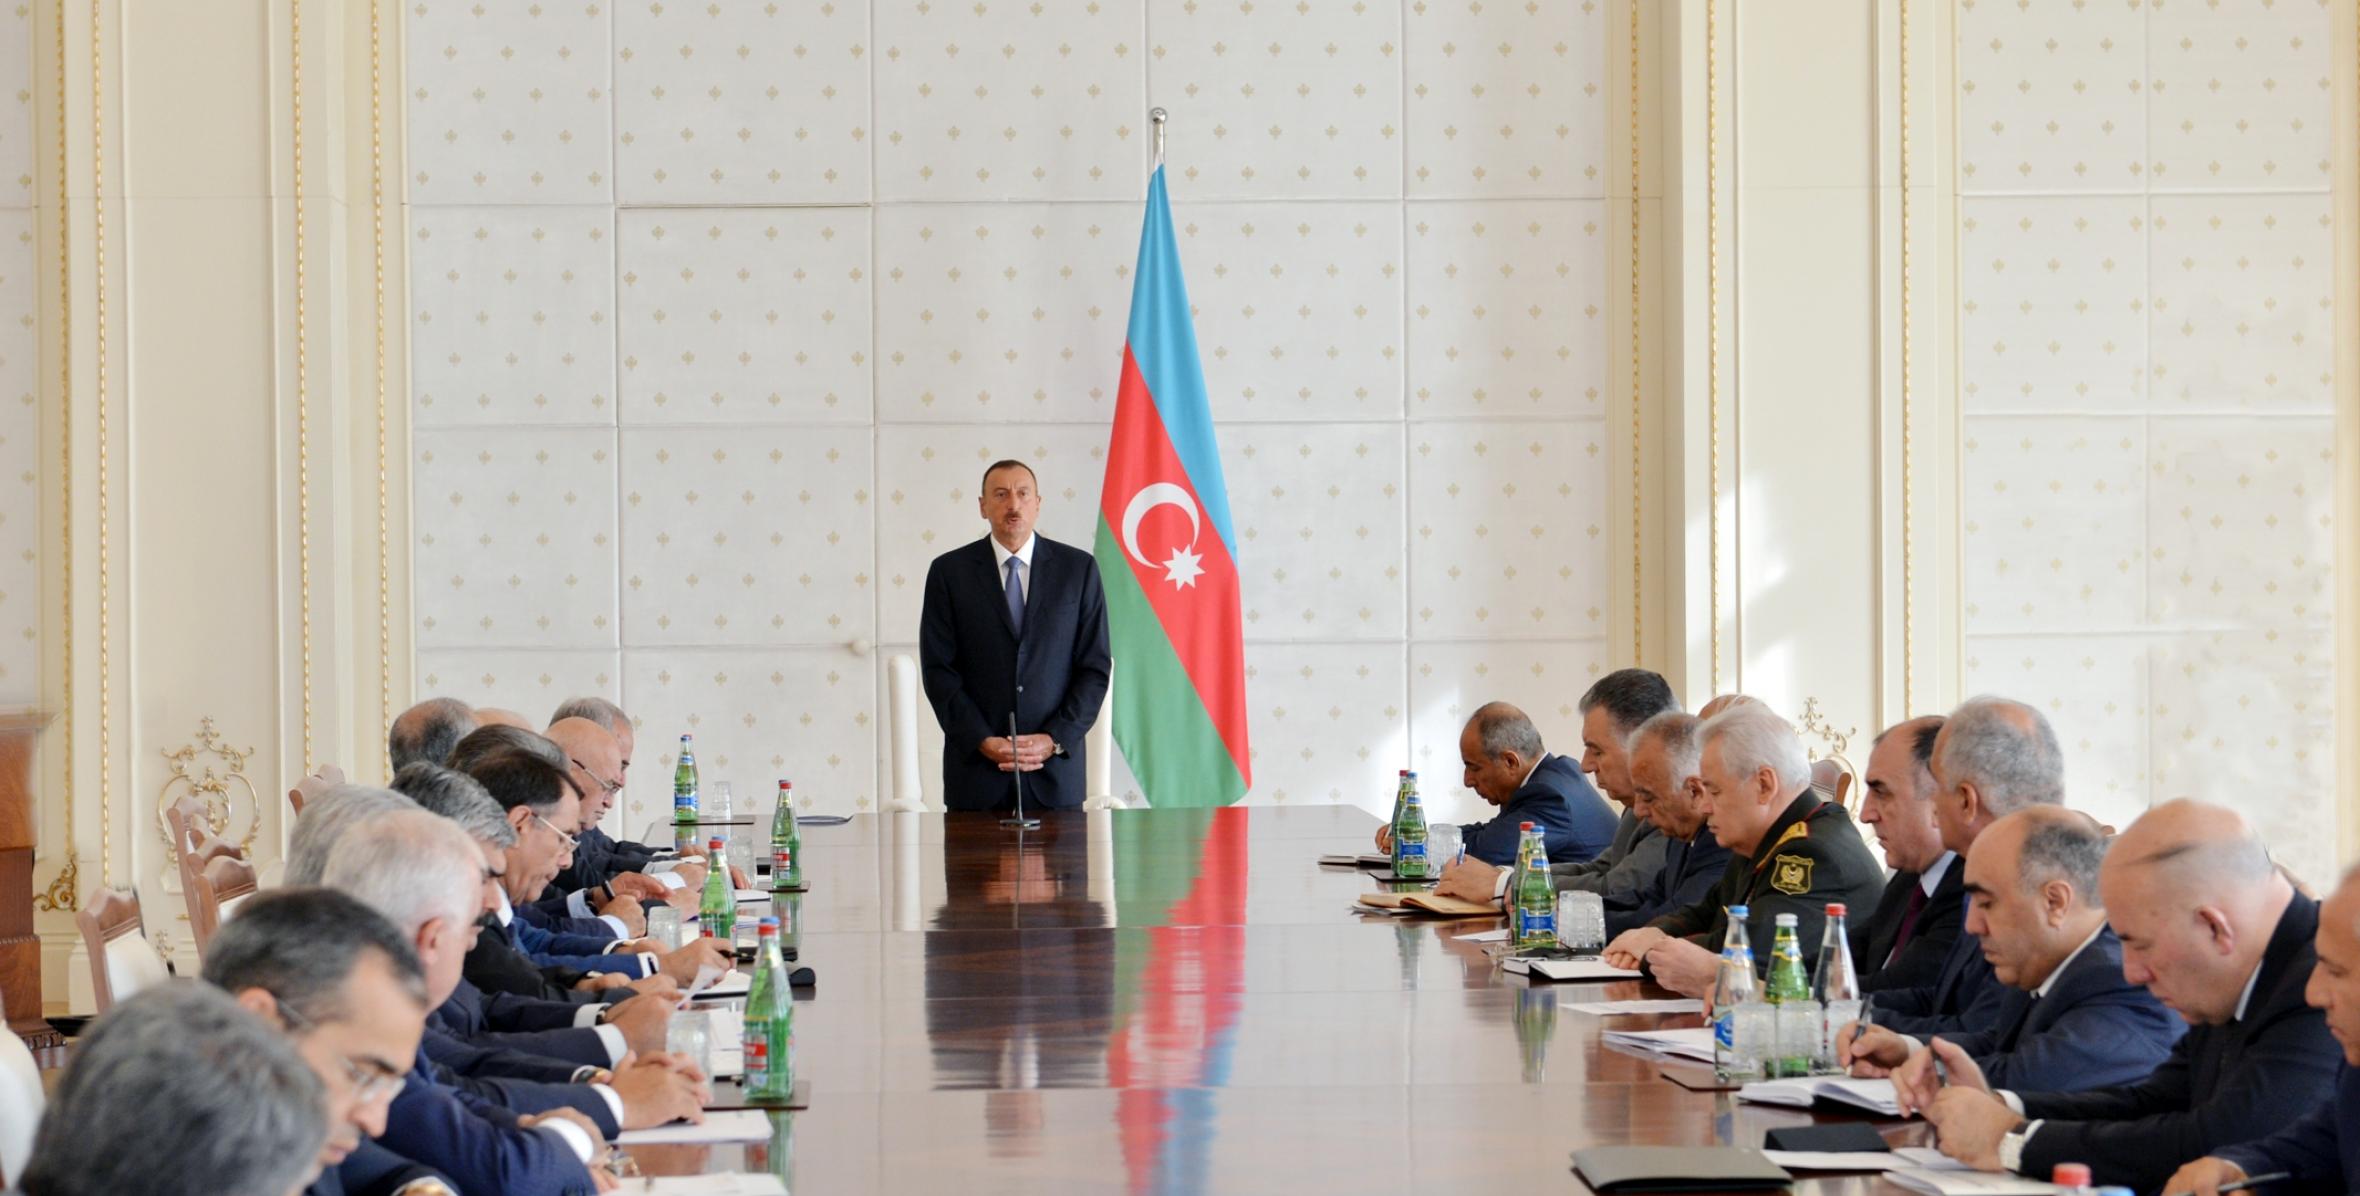 Под председательством Ильхама Алиева состоялось заседание Кабинета Министров, посвященное итогам социально-экономического развития в первой половине 2013 года и предстоящим задачам